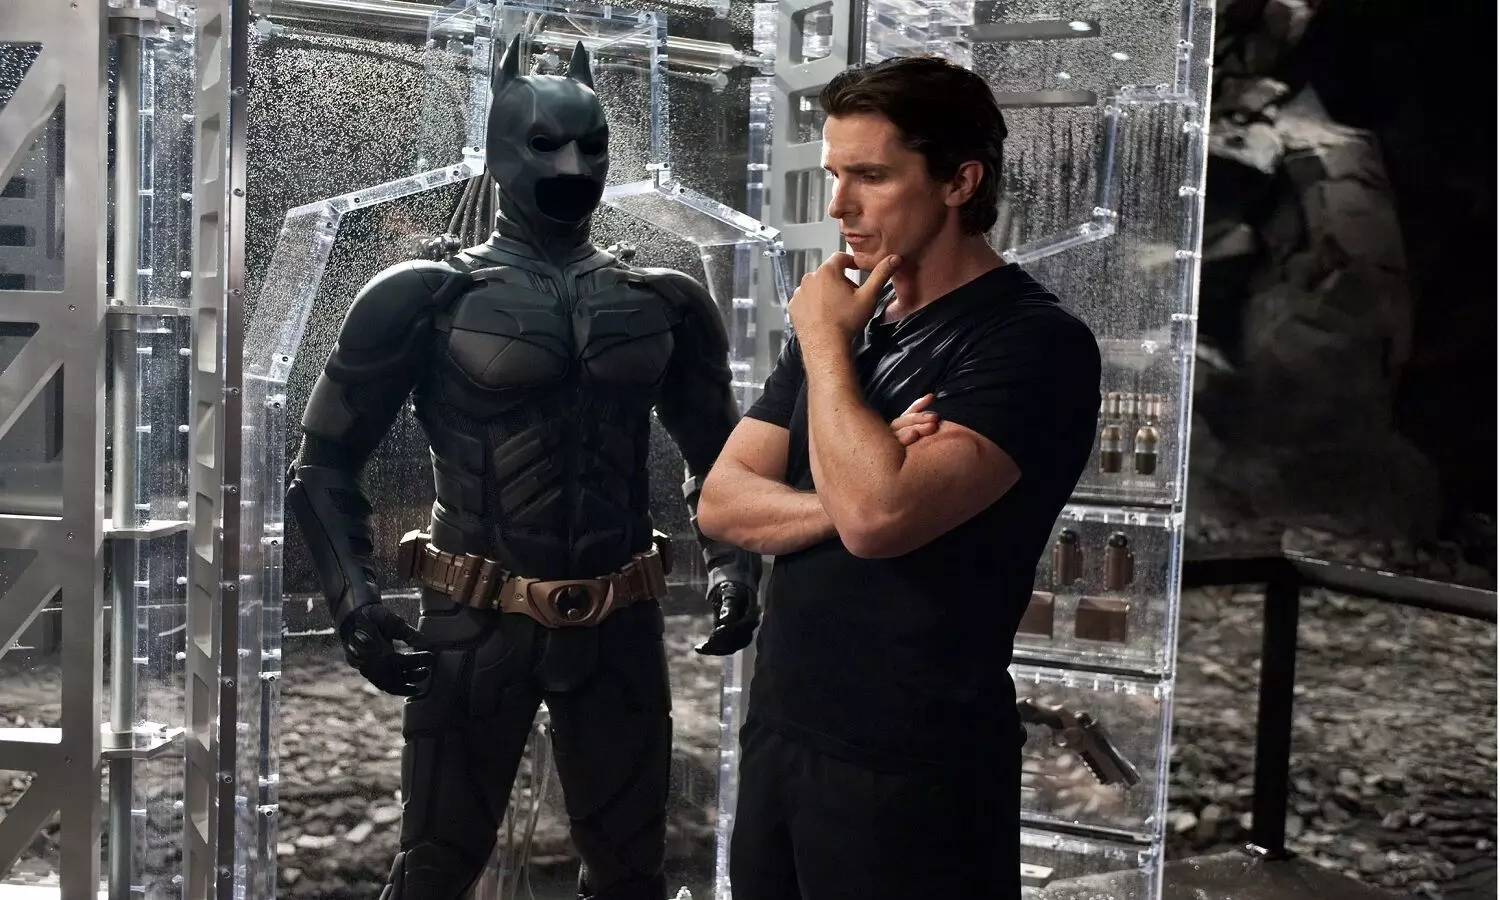 Christian Bale ने कहा मैं फिर से Batman बनने के लिए तैयार हूं लेकिन DC को मेरी ये शर्त माननी होगी